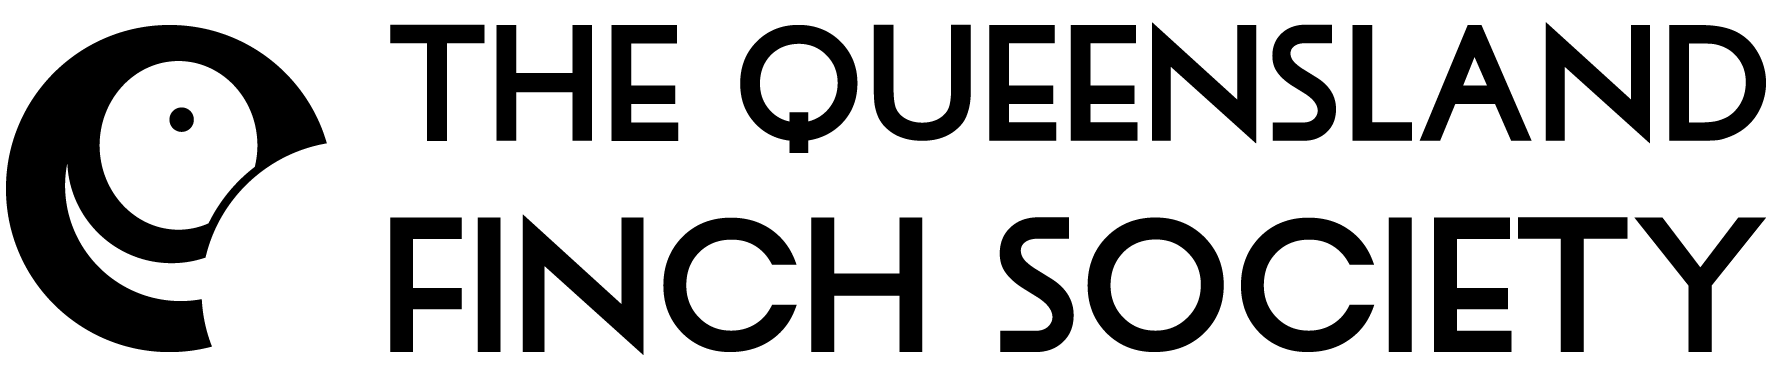 qld-finch-logo